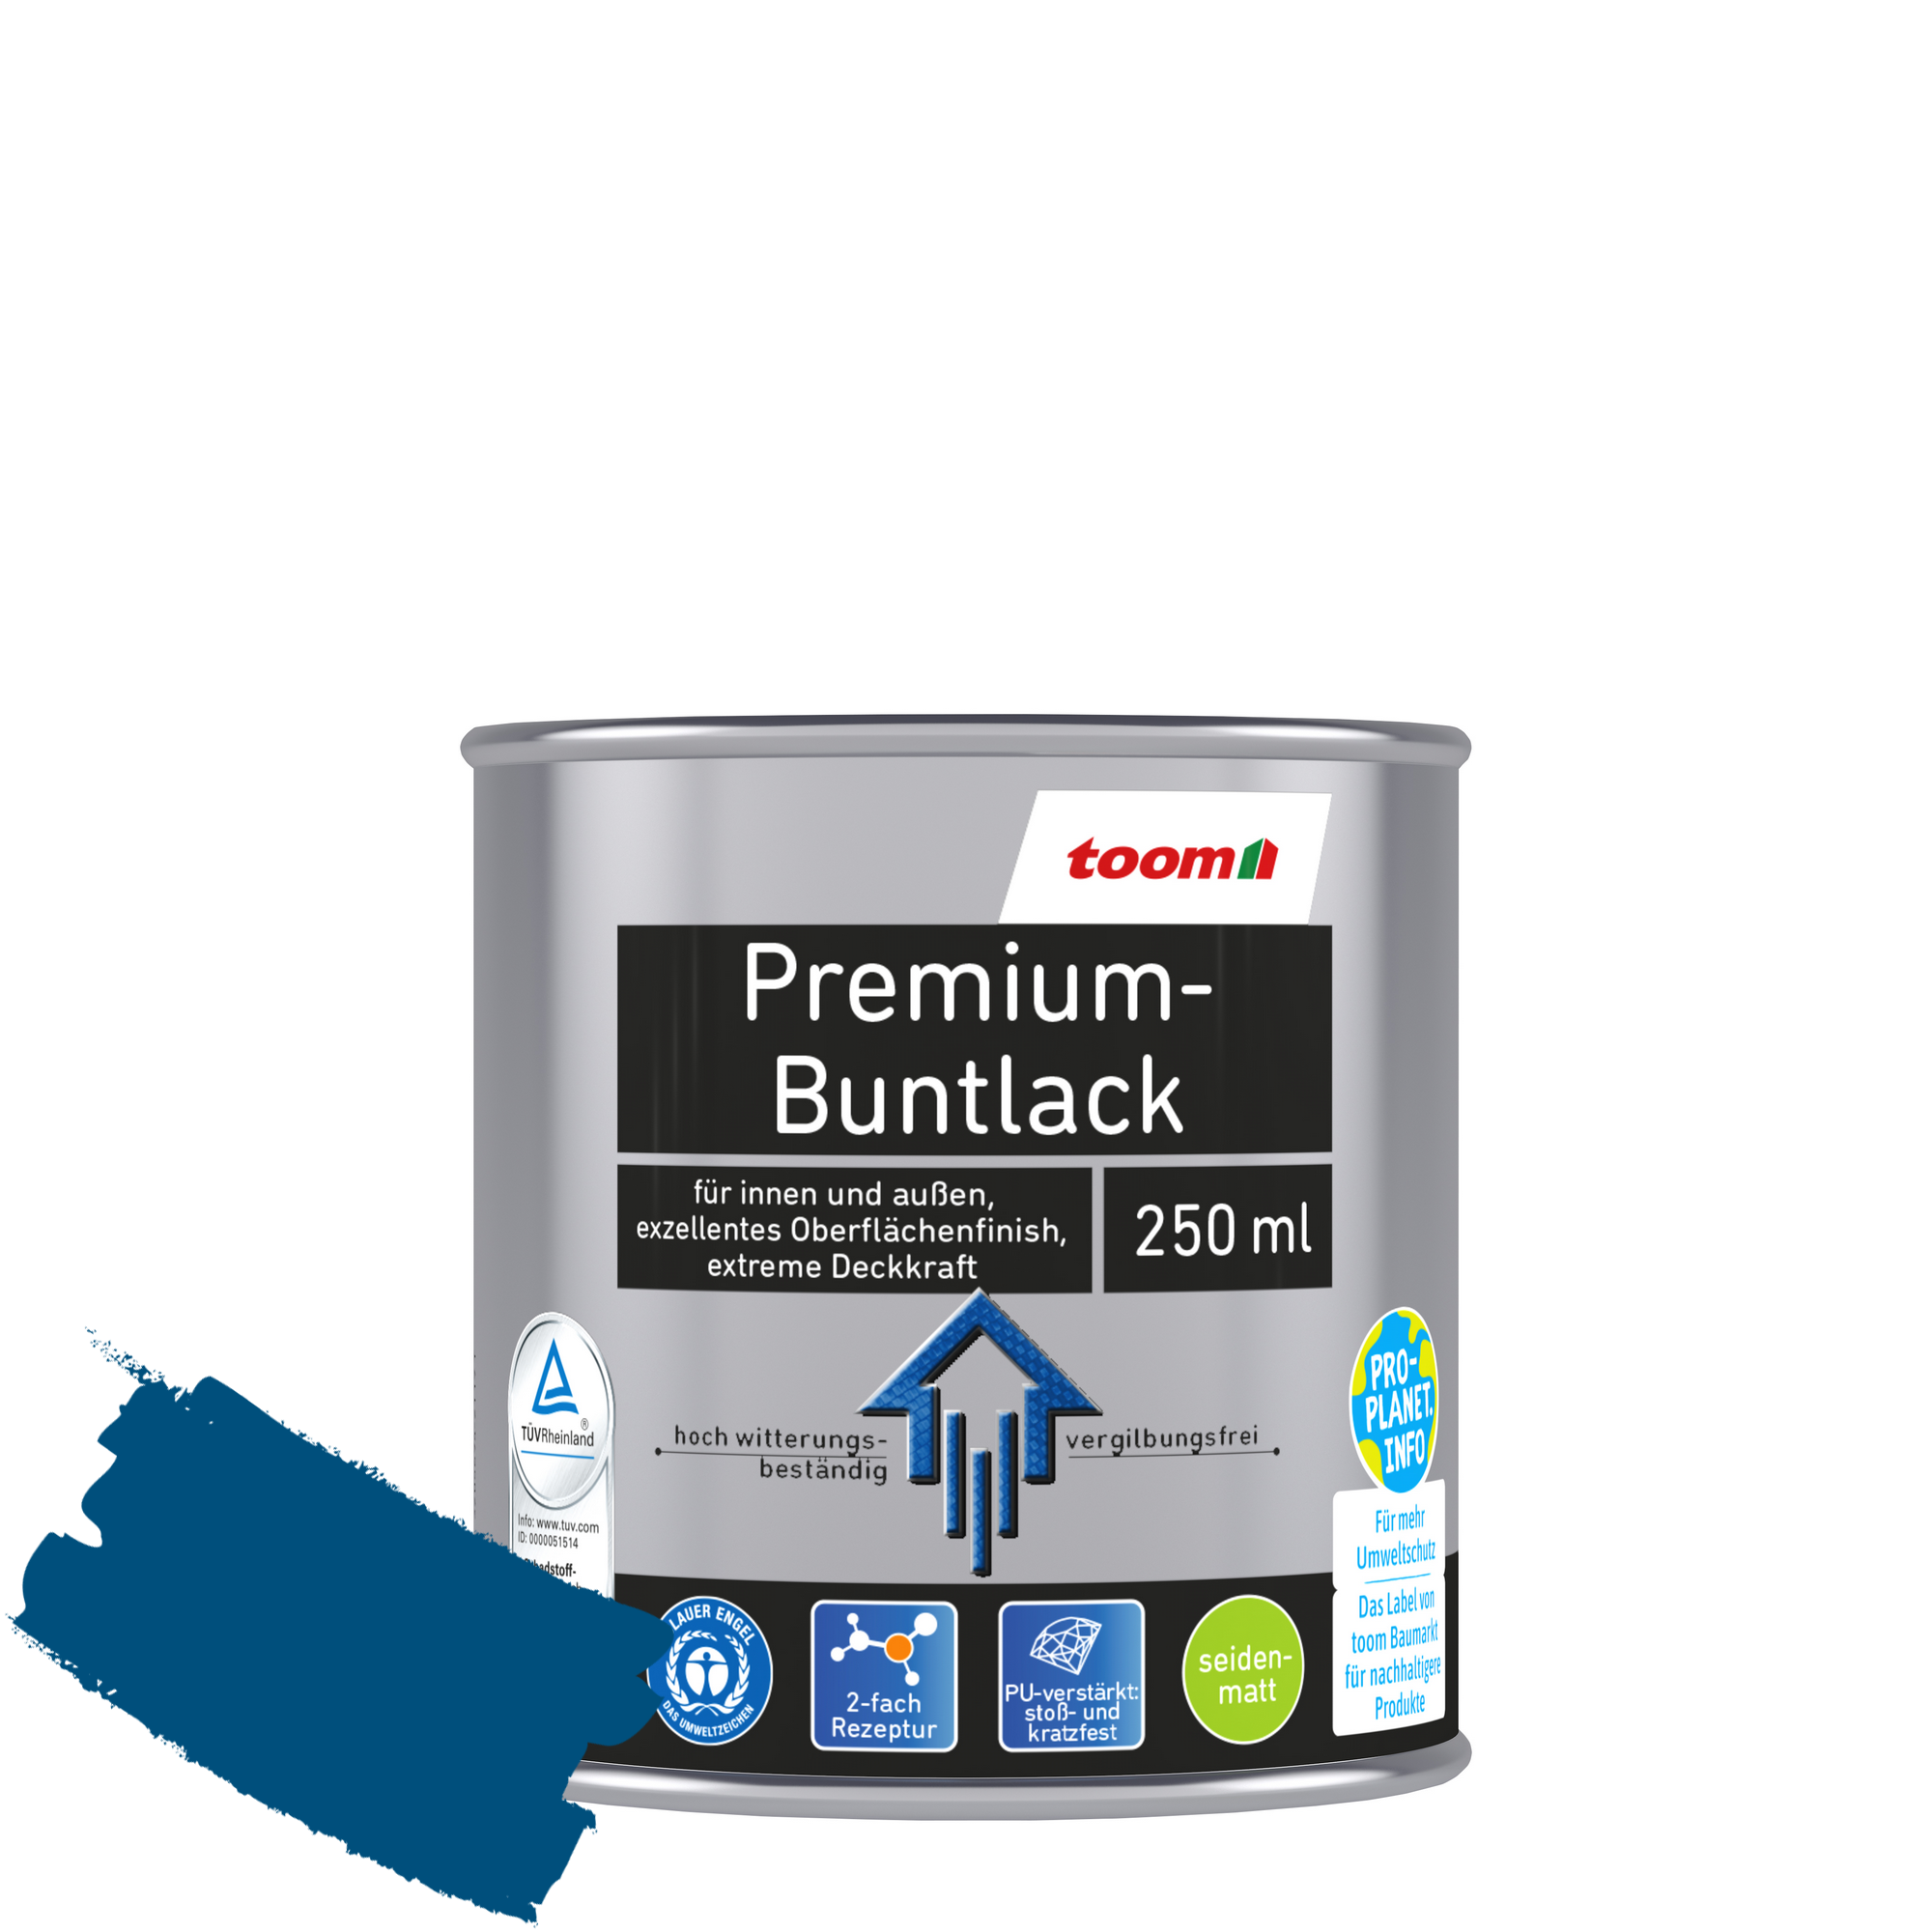 Premium-Buntlack enzianblau seidenmatt 250 ml + product picture